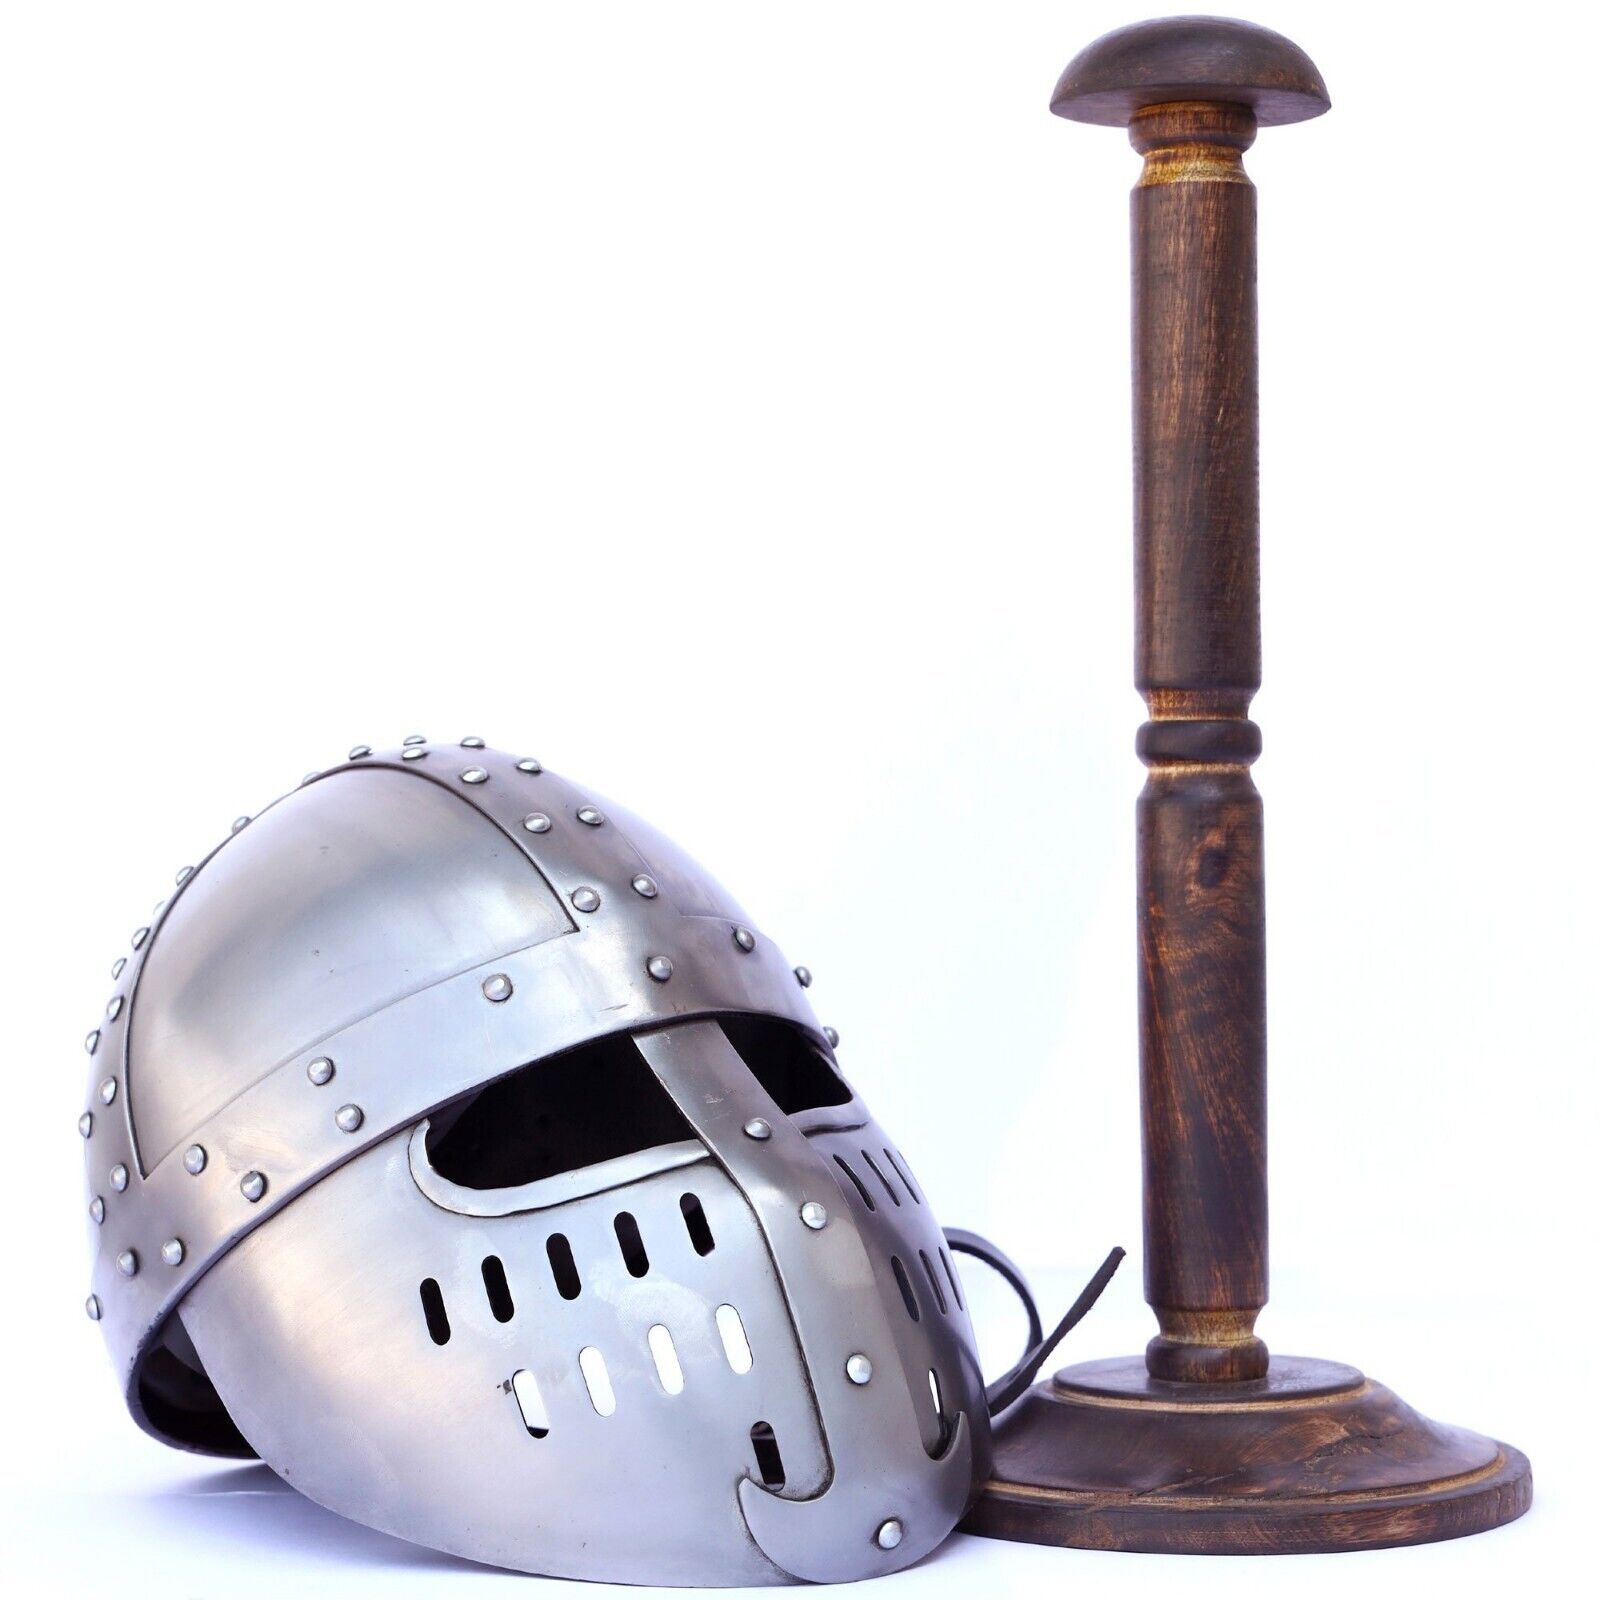 Norman Faceplate Crusader Spangenhelm Steel Helmet